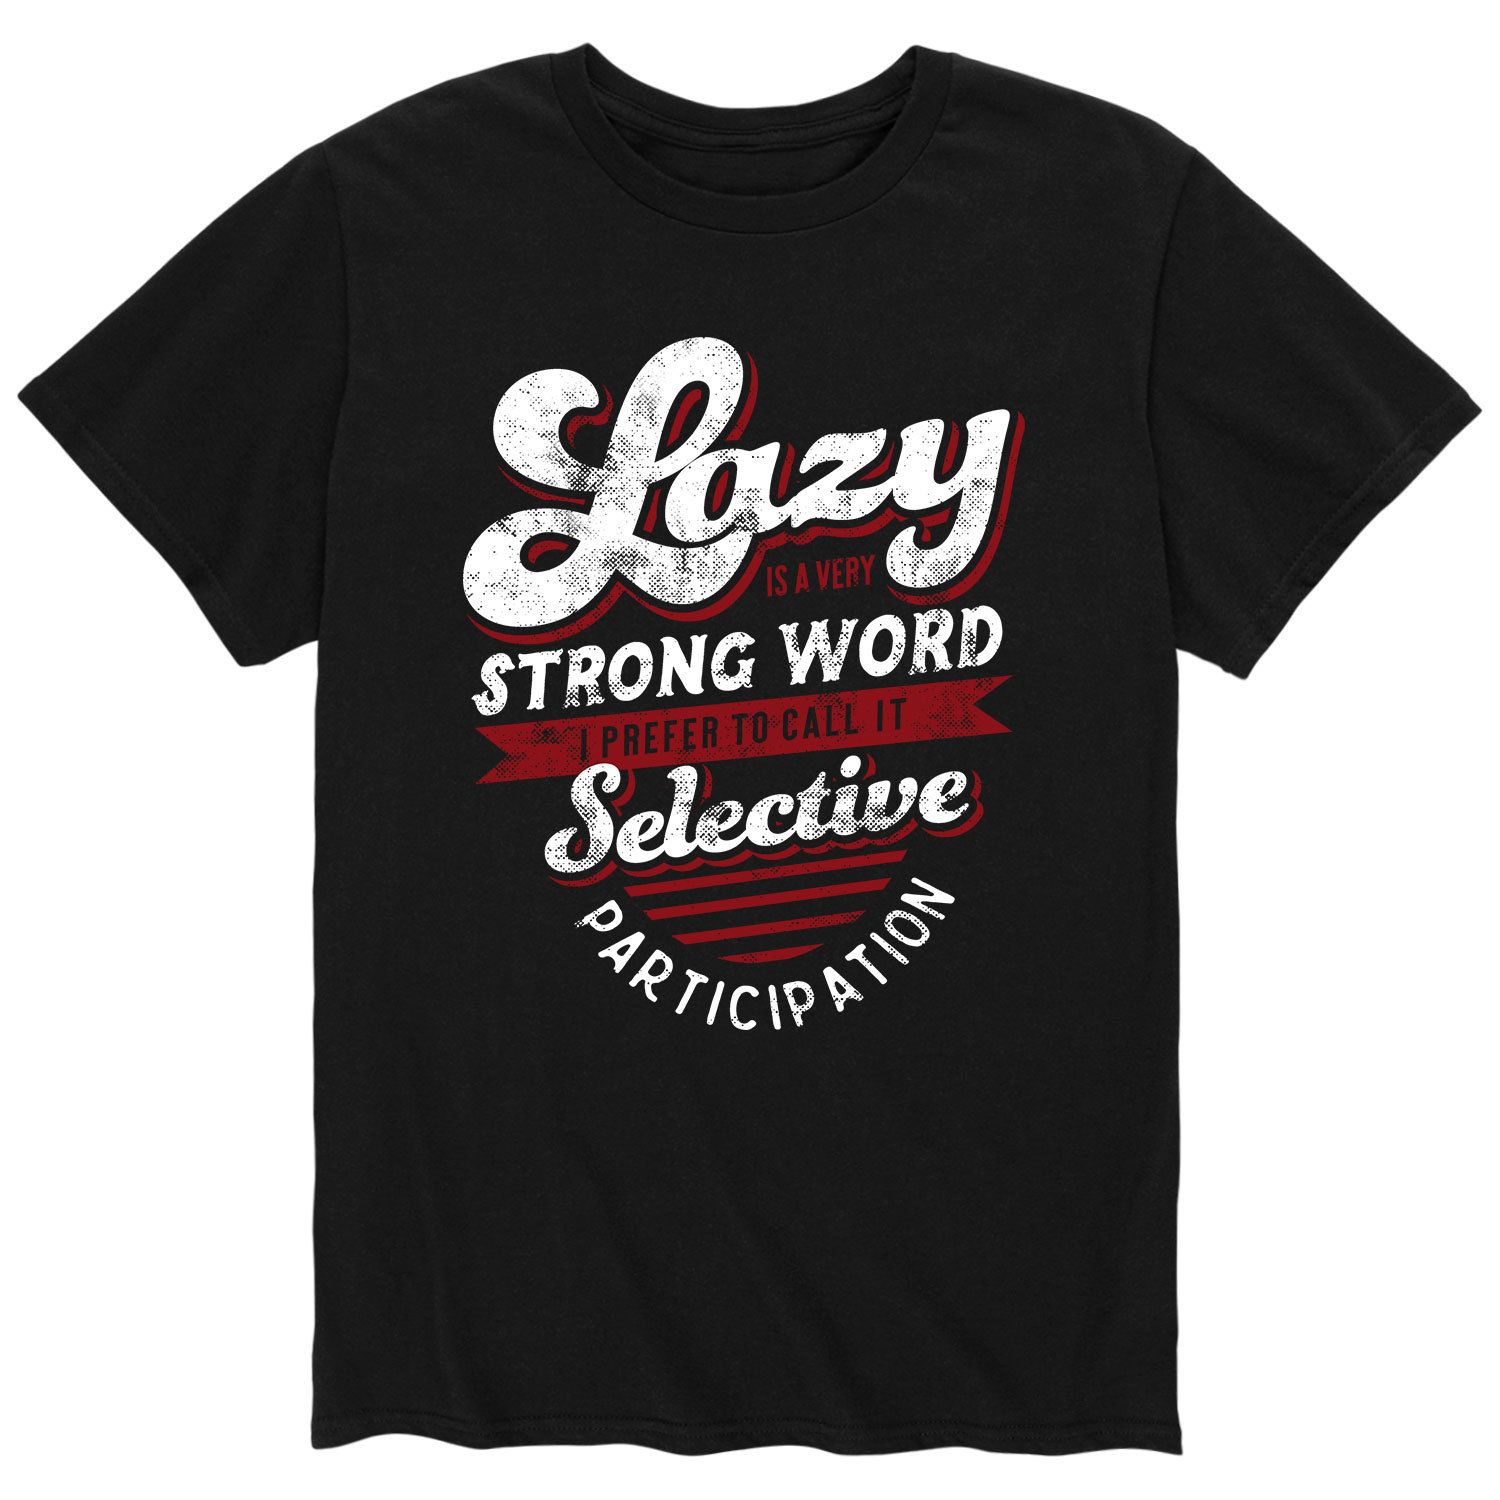 Мужская футболка Lazy — очень сильное слово Licensed Character